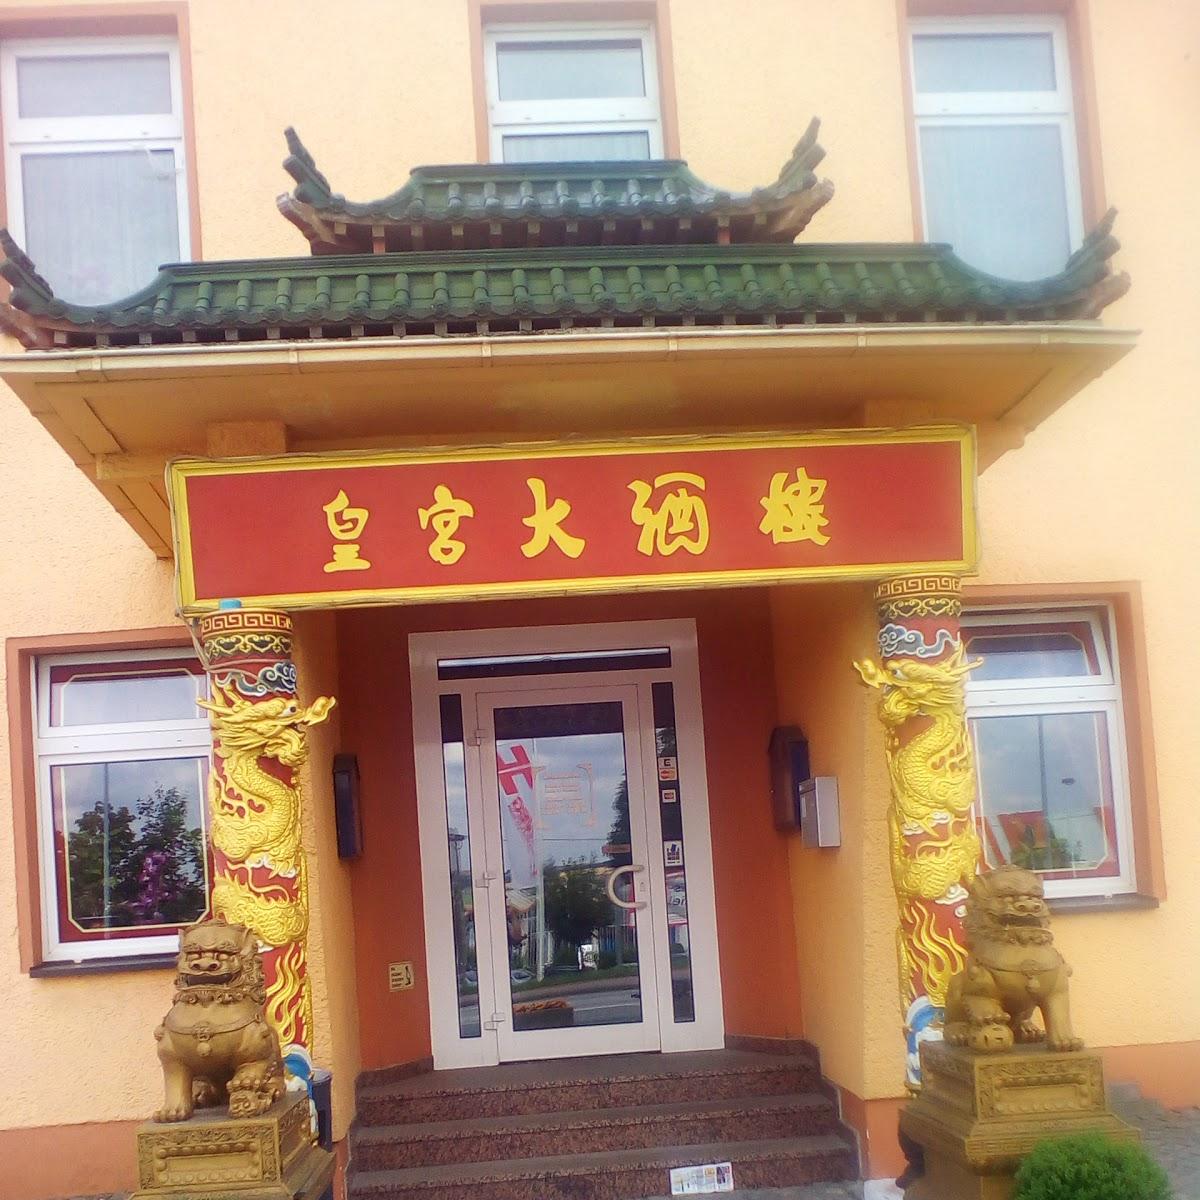 Restaurant "China Palace Restaurant" in Lutherstadt Eisleben